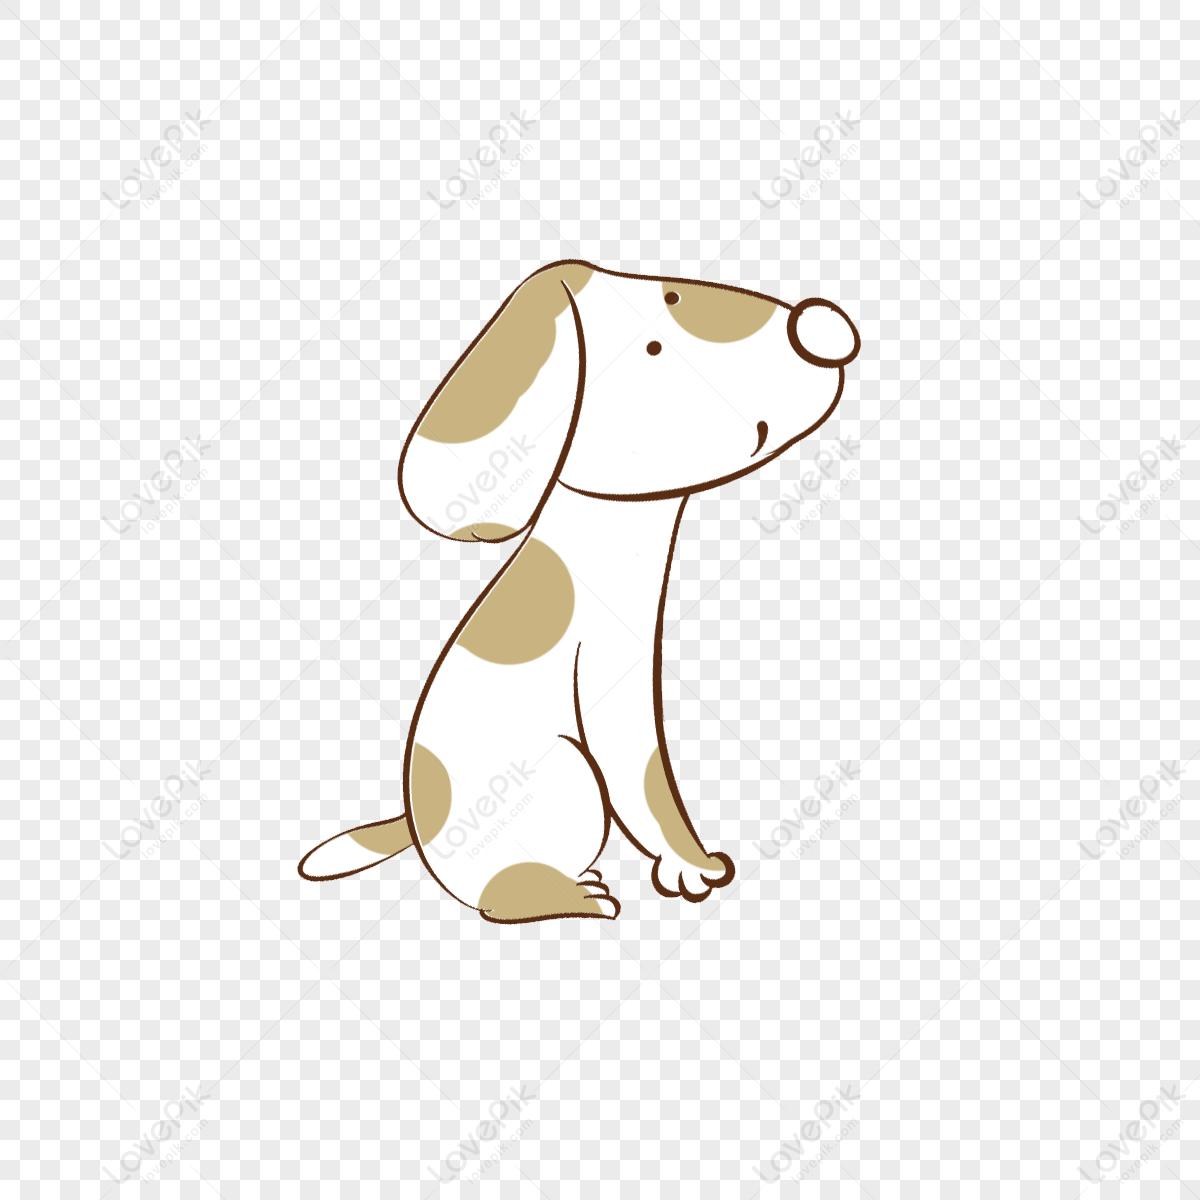 Hãy xem hình ảnh về con chó đốm PNG đáng yêu này! Con chó đáng yêu và nghịch ngợm này sẽ khiến bạn cười thích thú. Hình ảnh đầy màu sắc này sẽ là một sự bổ sung hoàn hảo cho bộ sưu tập của bạn.